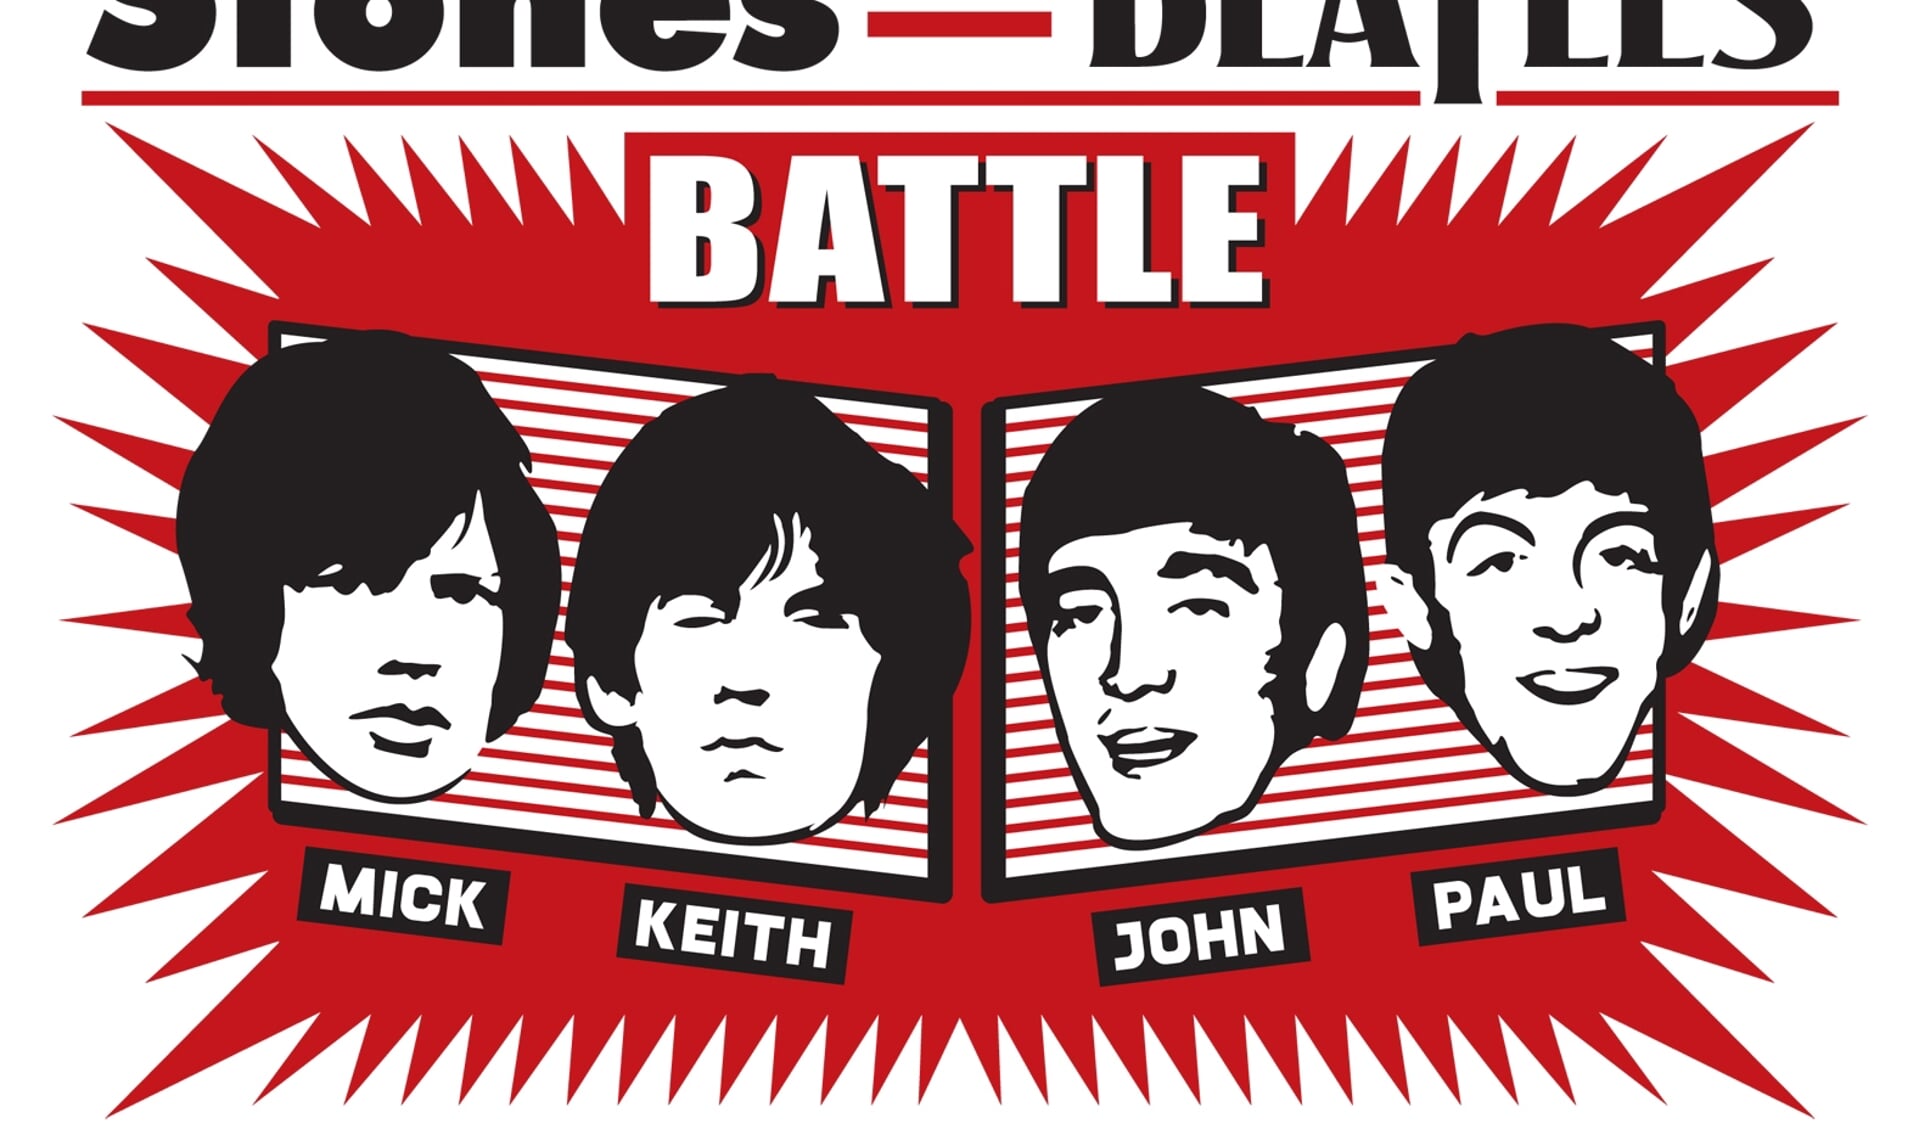 The Stones vs The Beatles